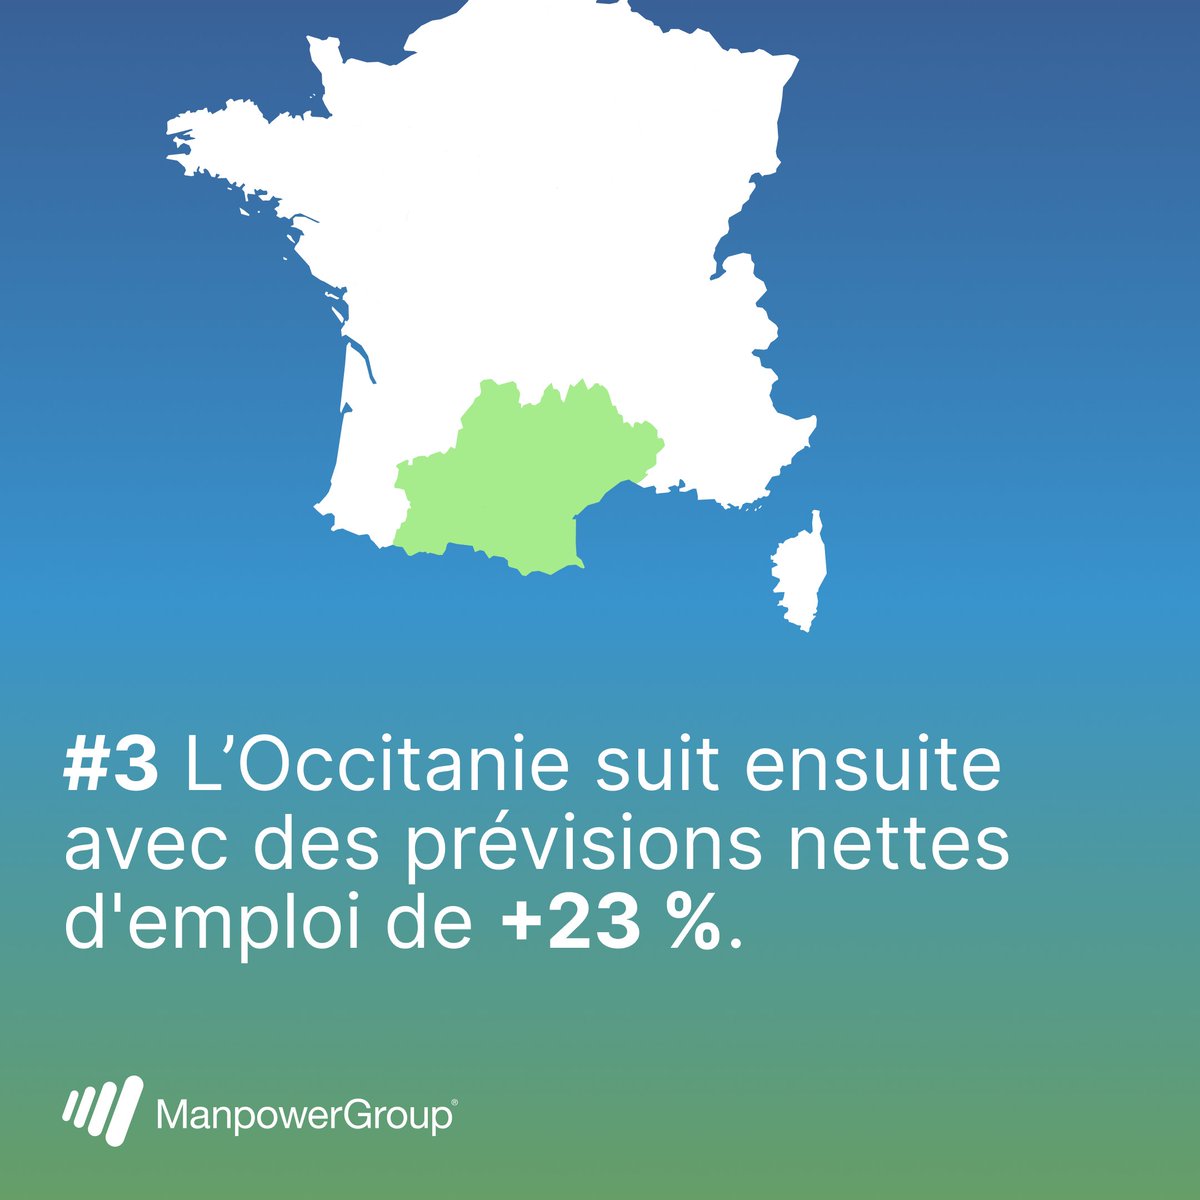 Les prévisions les plus optimistes en termes d'emploi pour le 2e trimestre 2024 se situent en Bourgogne Franche-Comté avec une augmentation projetée de l'emploi de 26 %. Explorez les perspectives d'embauche spécifiques à aux régions françaises 👇